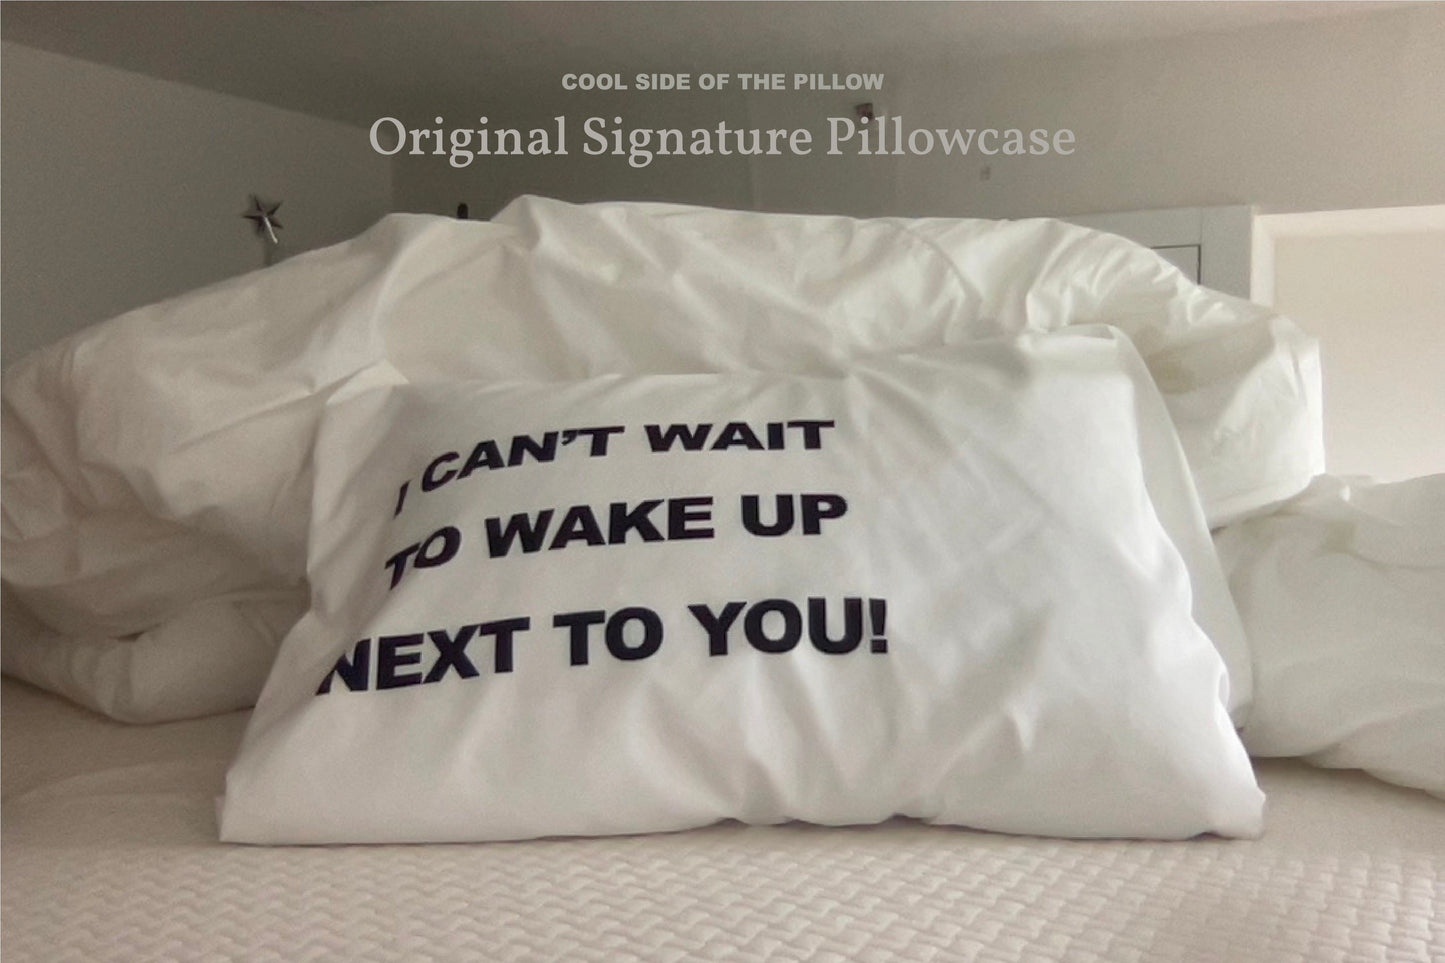 Original Signature Pillowcase